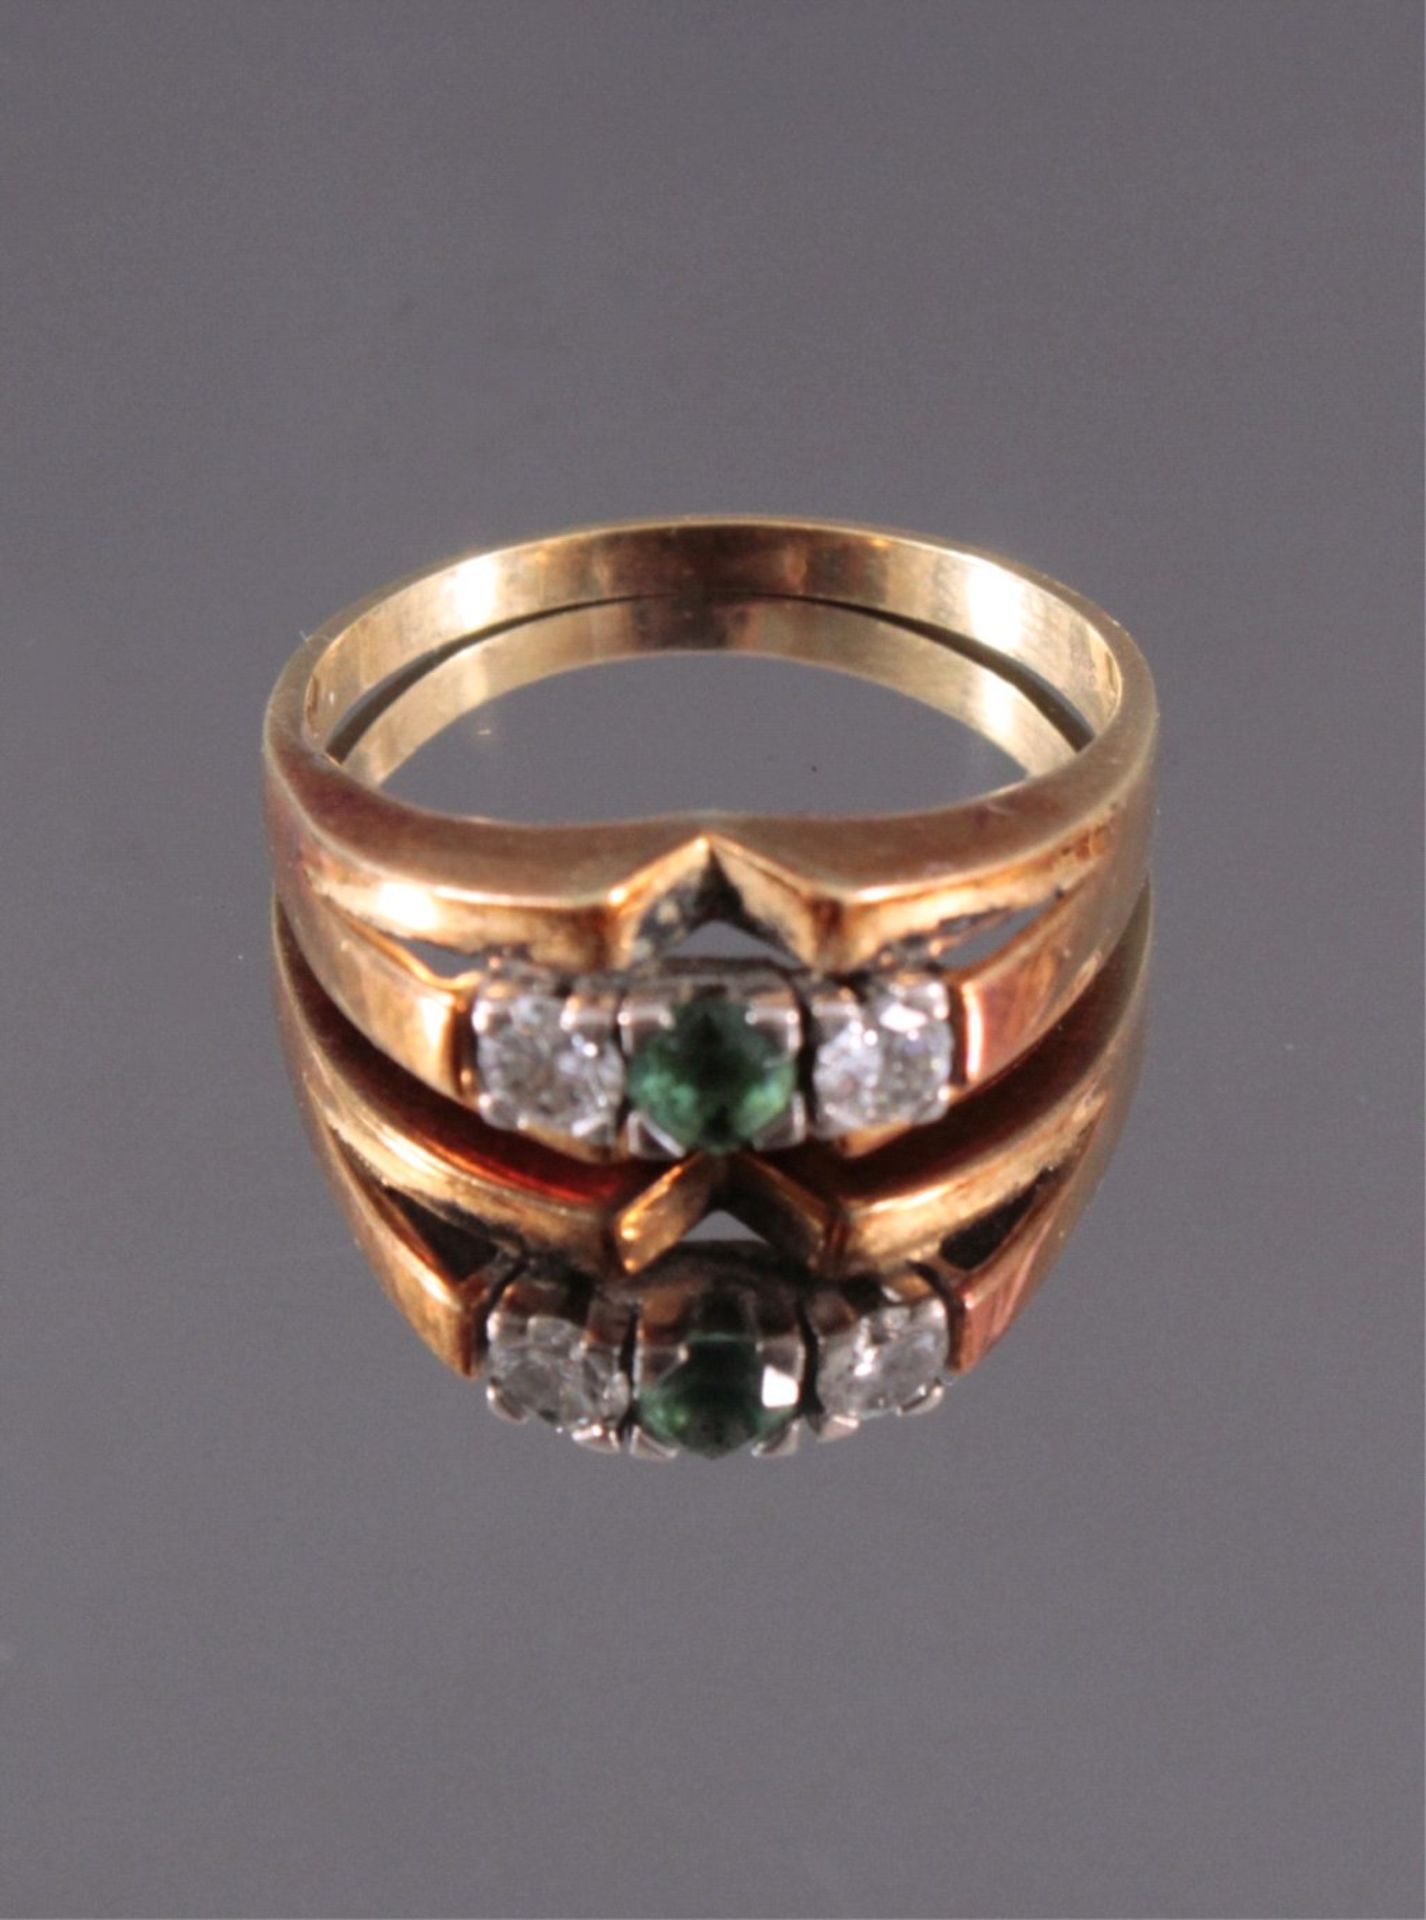 Damenring mit Diamanten und Smaragd, 585/000 GelbgoldRG 62, 2 Diamanten von jeweils ca. 0,15 kt., - Bild 2 aus 2